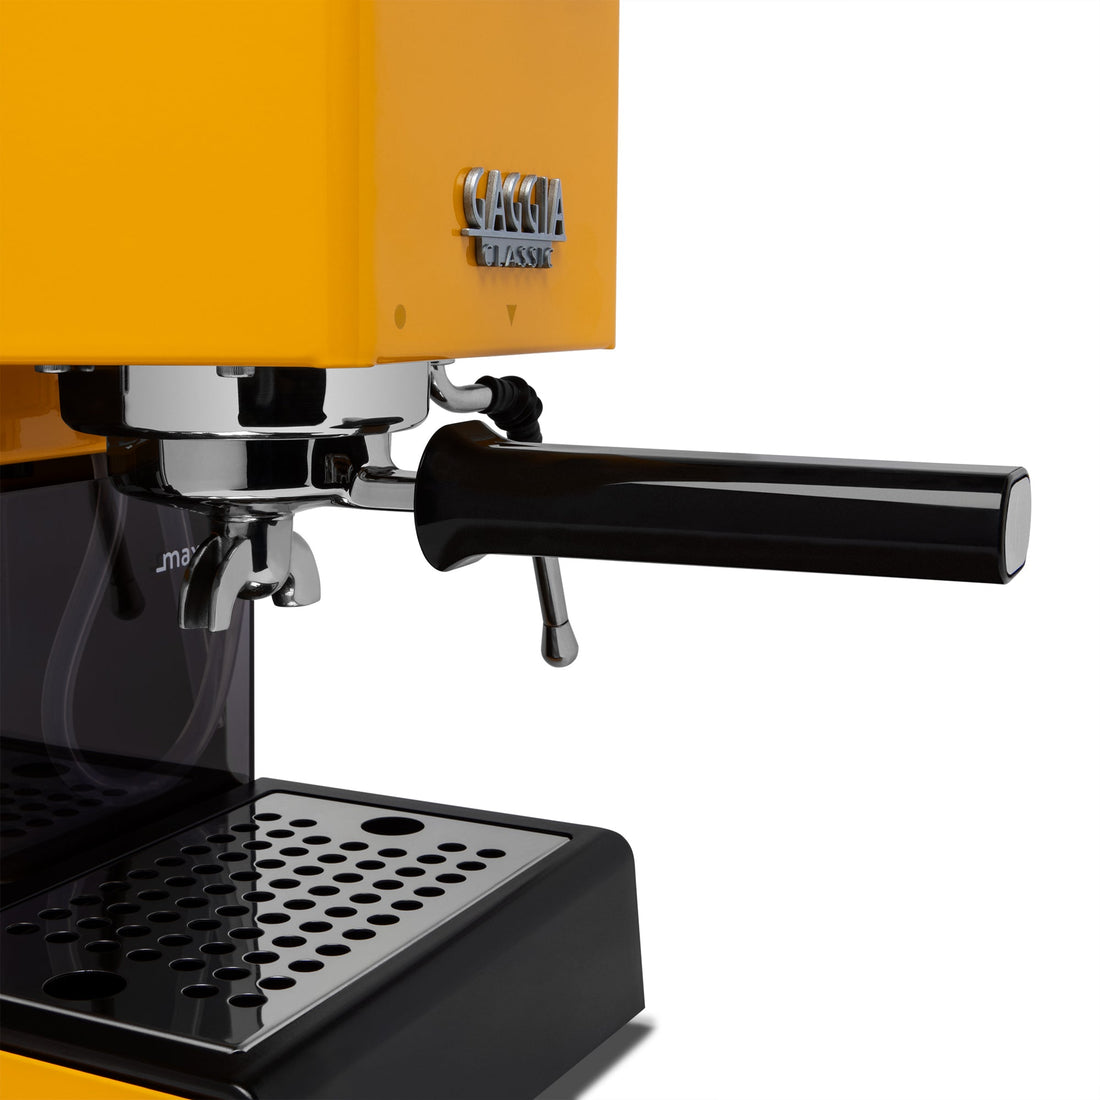 Gaggia Classic Evo Pro Espresso Machine in Sunshine Yellow with Tiger Maple